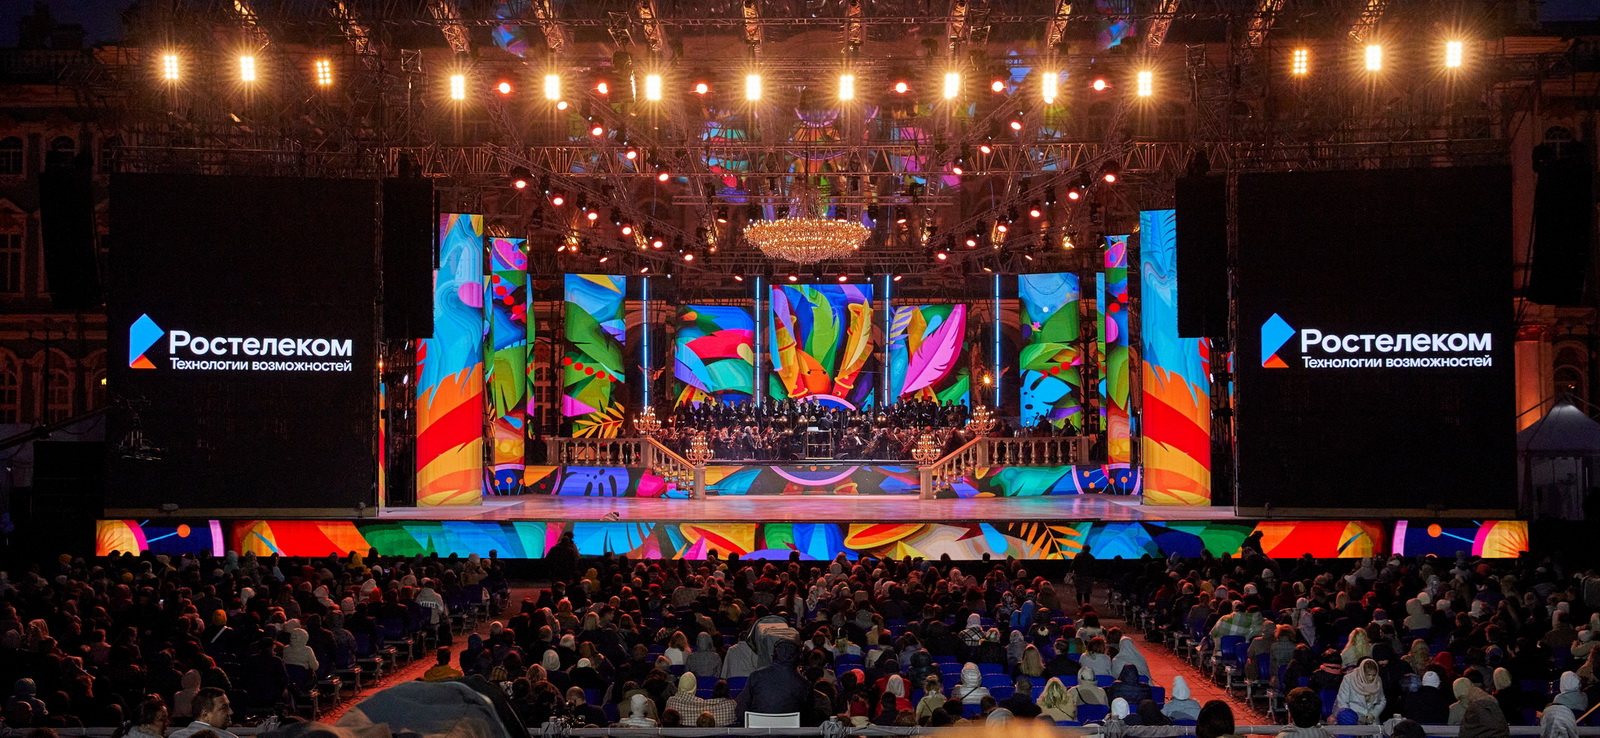 Трансляция концерта ведется на пяти огромных экранах